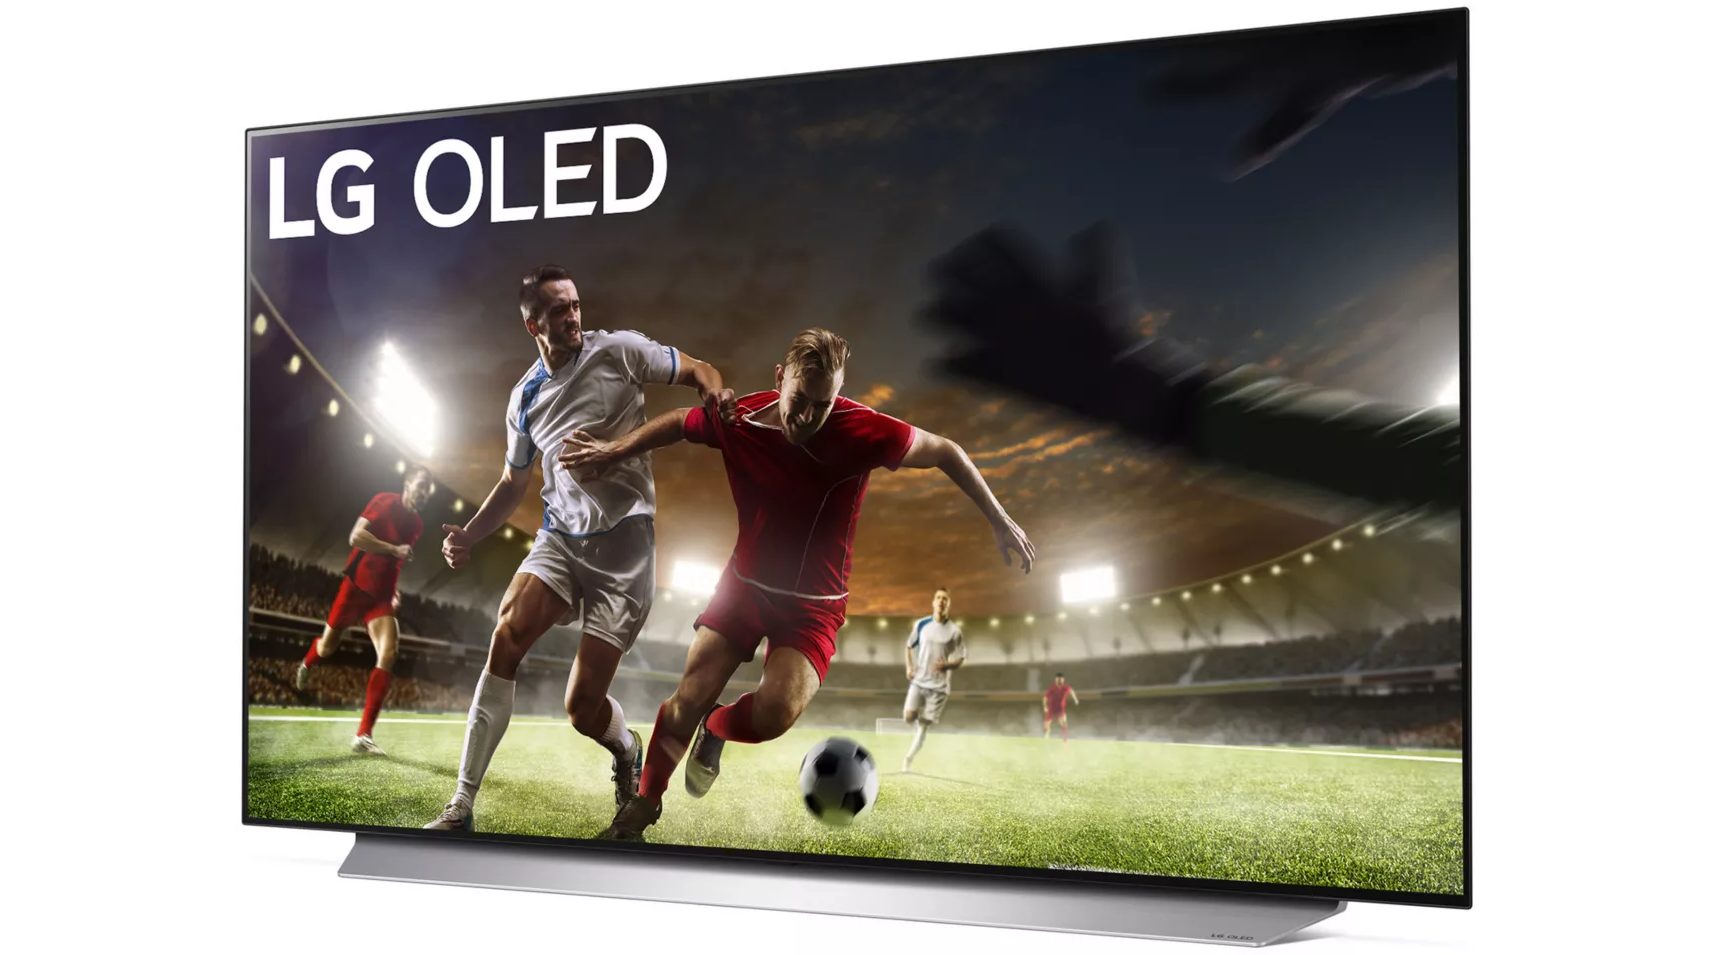 TV OLED LG - 139cm - 55C15 